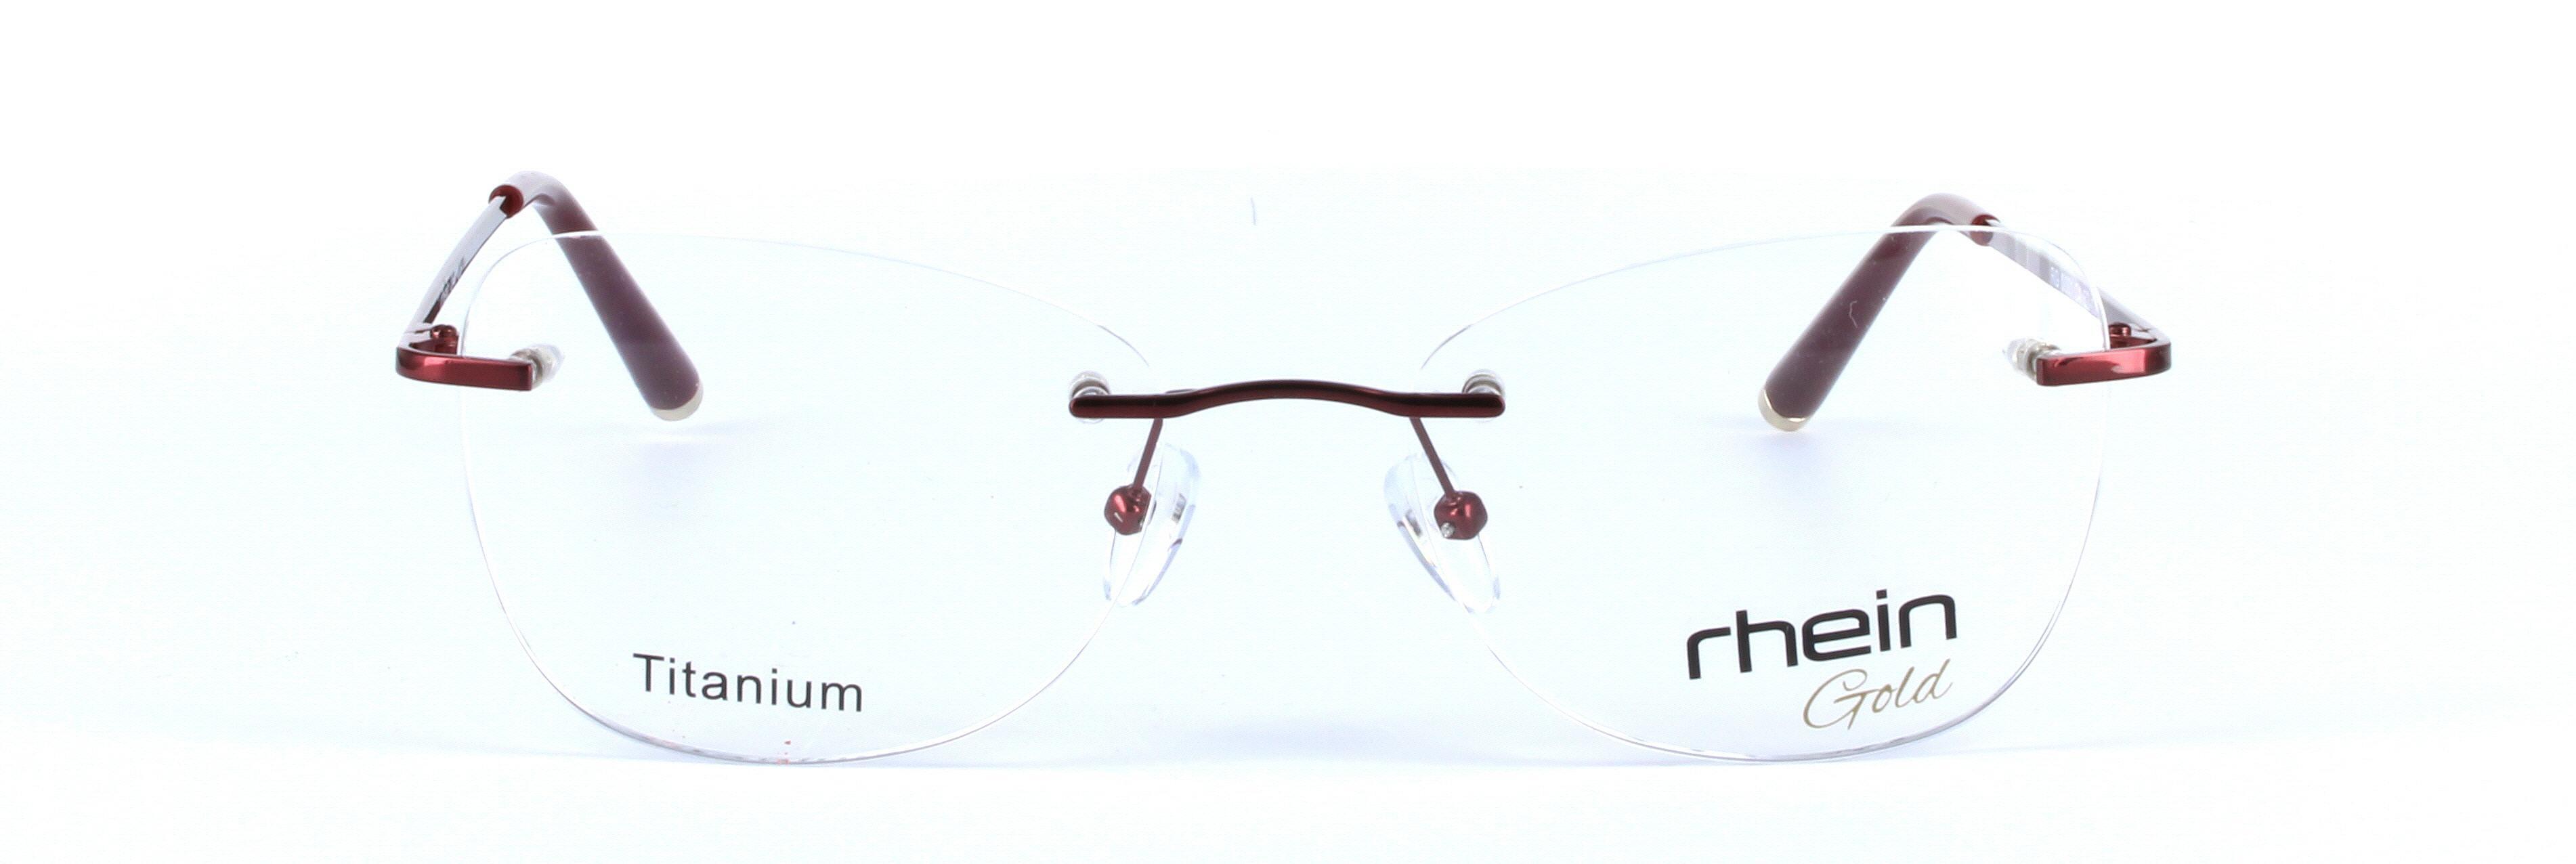 Hope Titanium Burgundy Rimless Rectangular Titanium Glasses - Image View 5